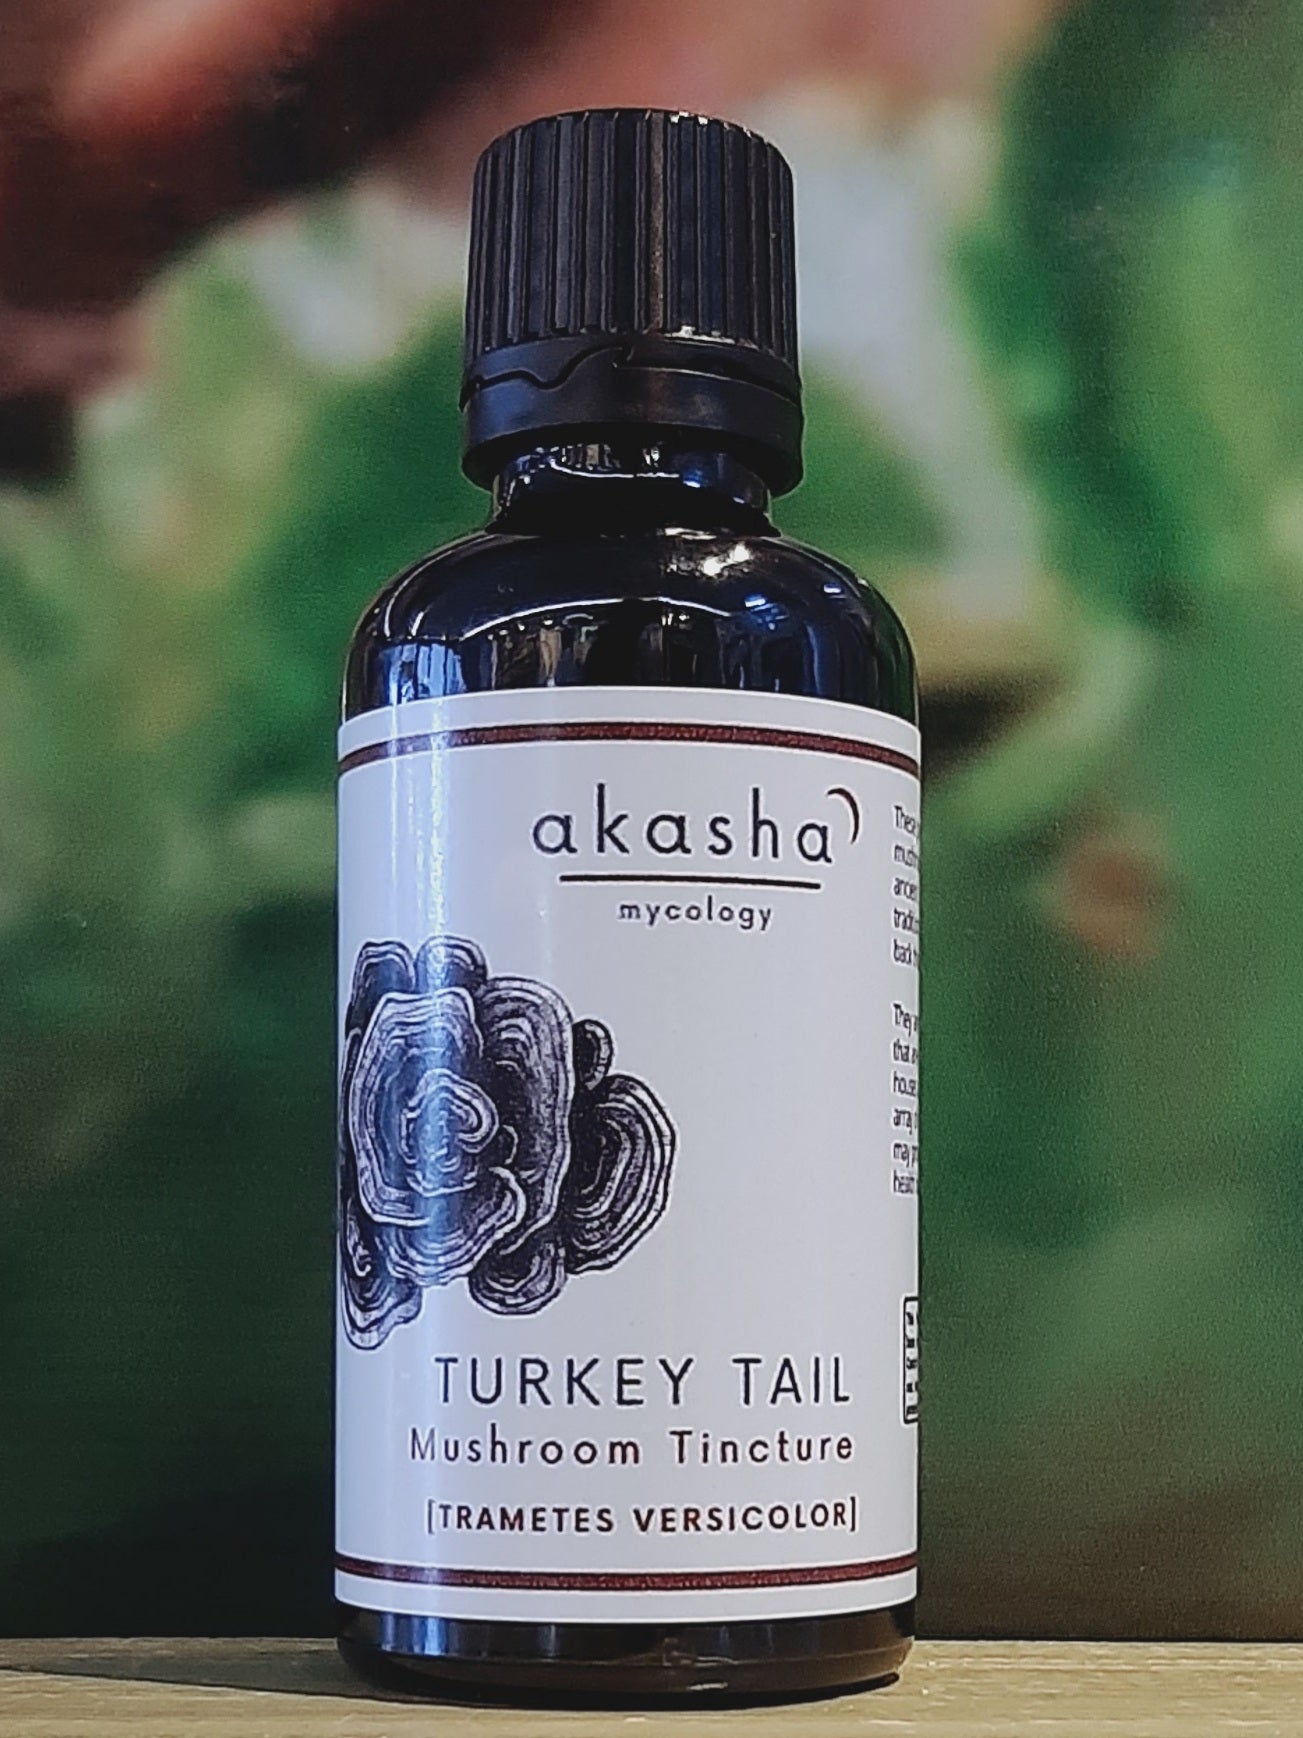 Akasha Turkey tail mushroom tincture   50ml